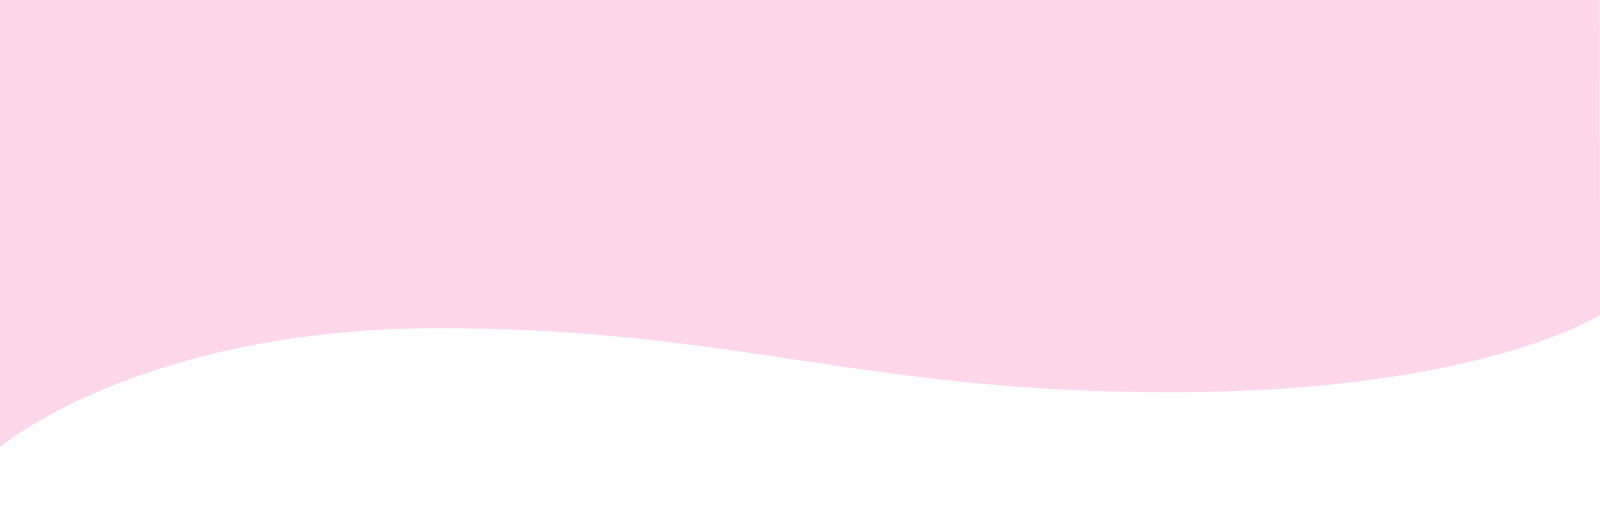 pink wave design